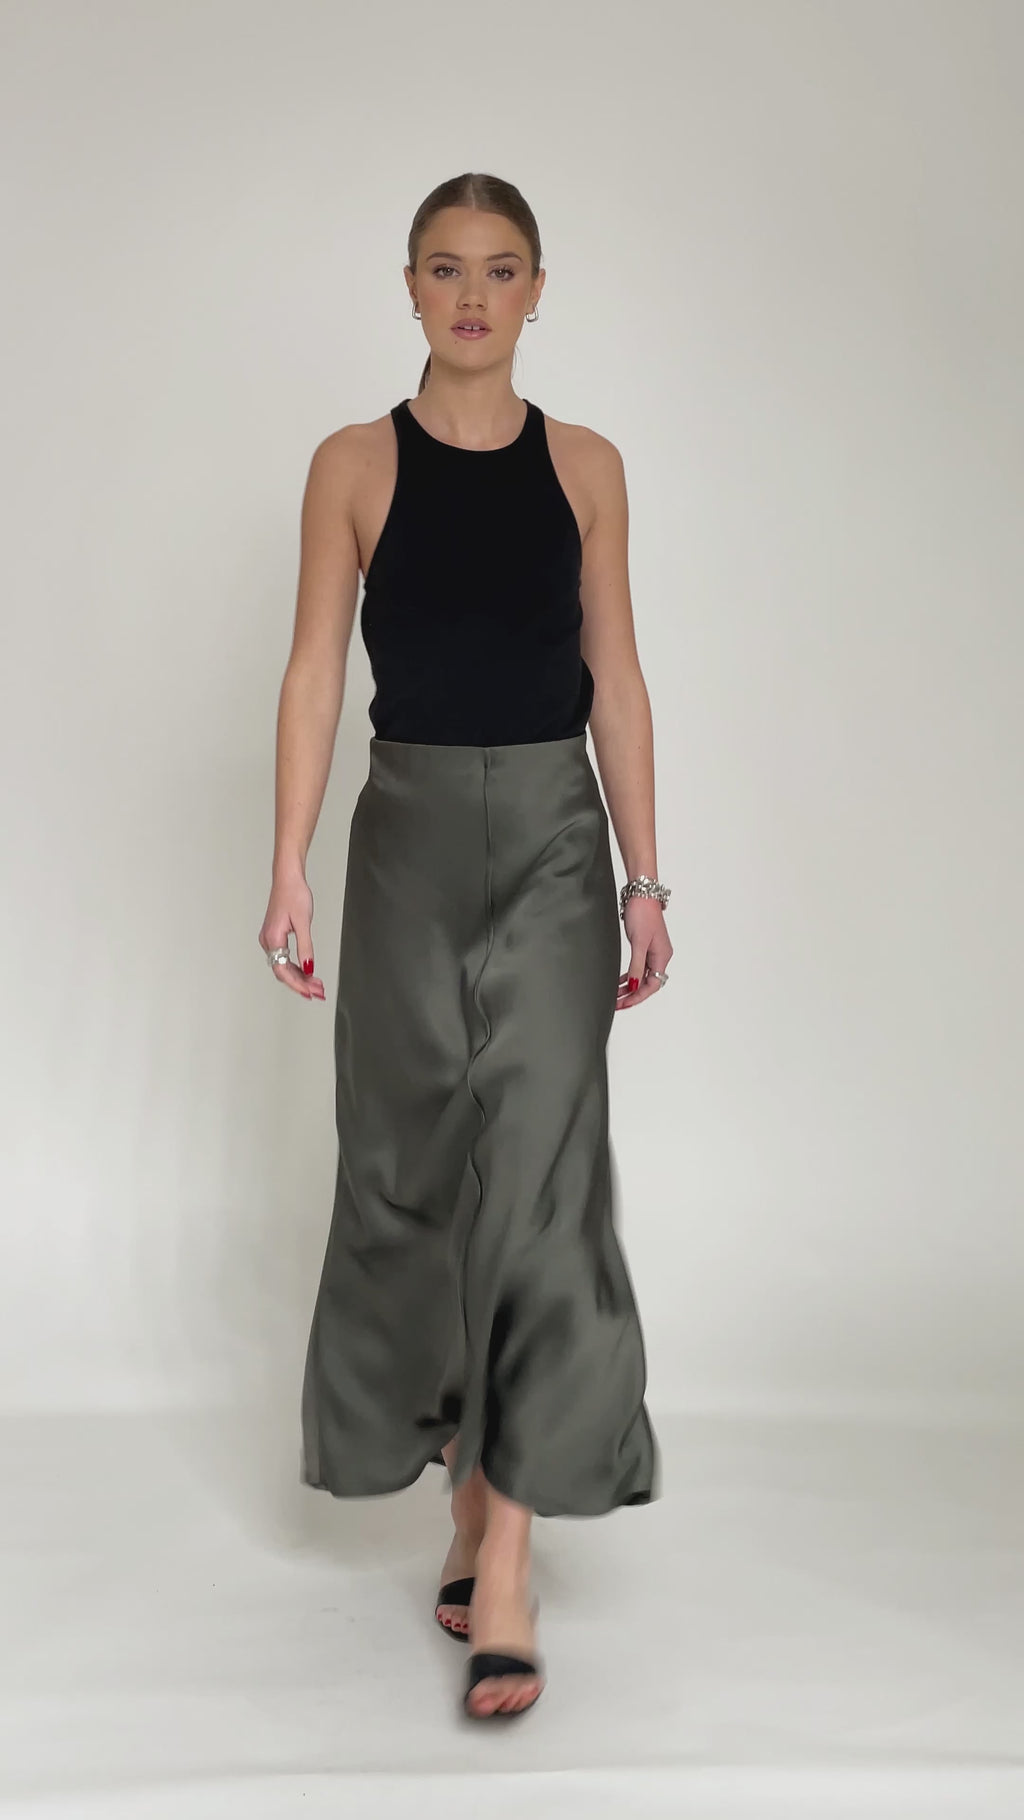 Dark Grey High Waist Ankle Length Slip Skirt - Custom Made - Bastet Noir